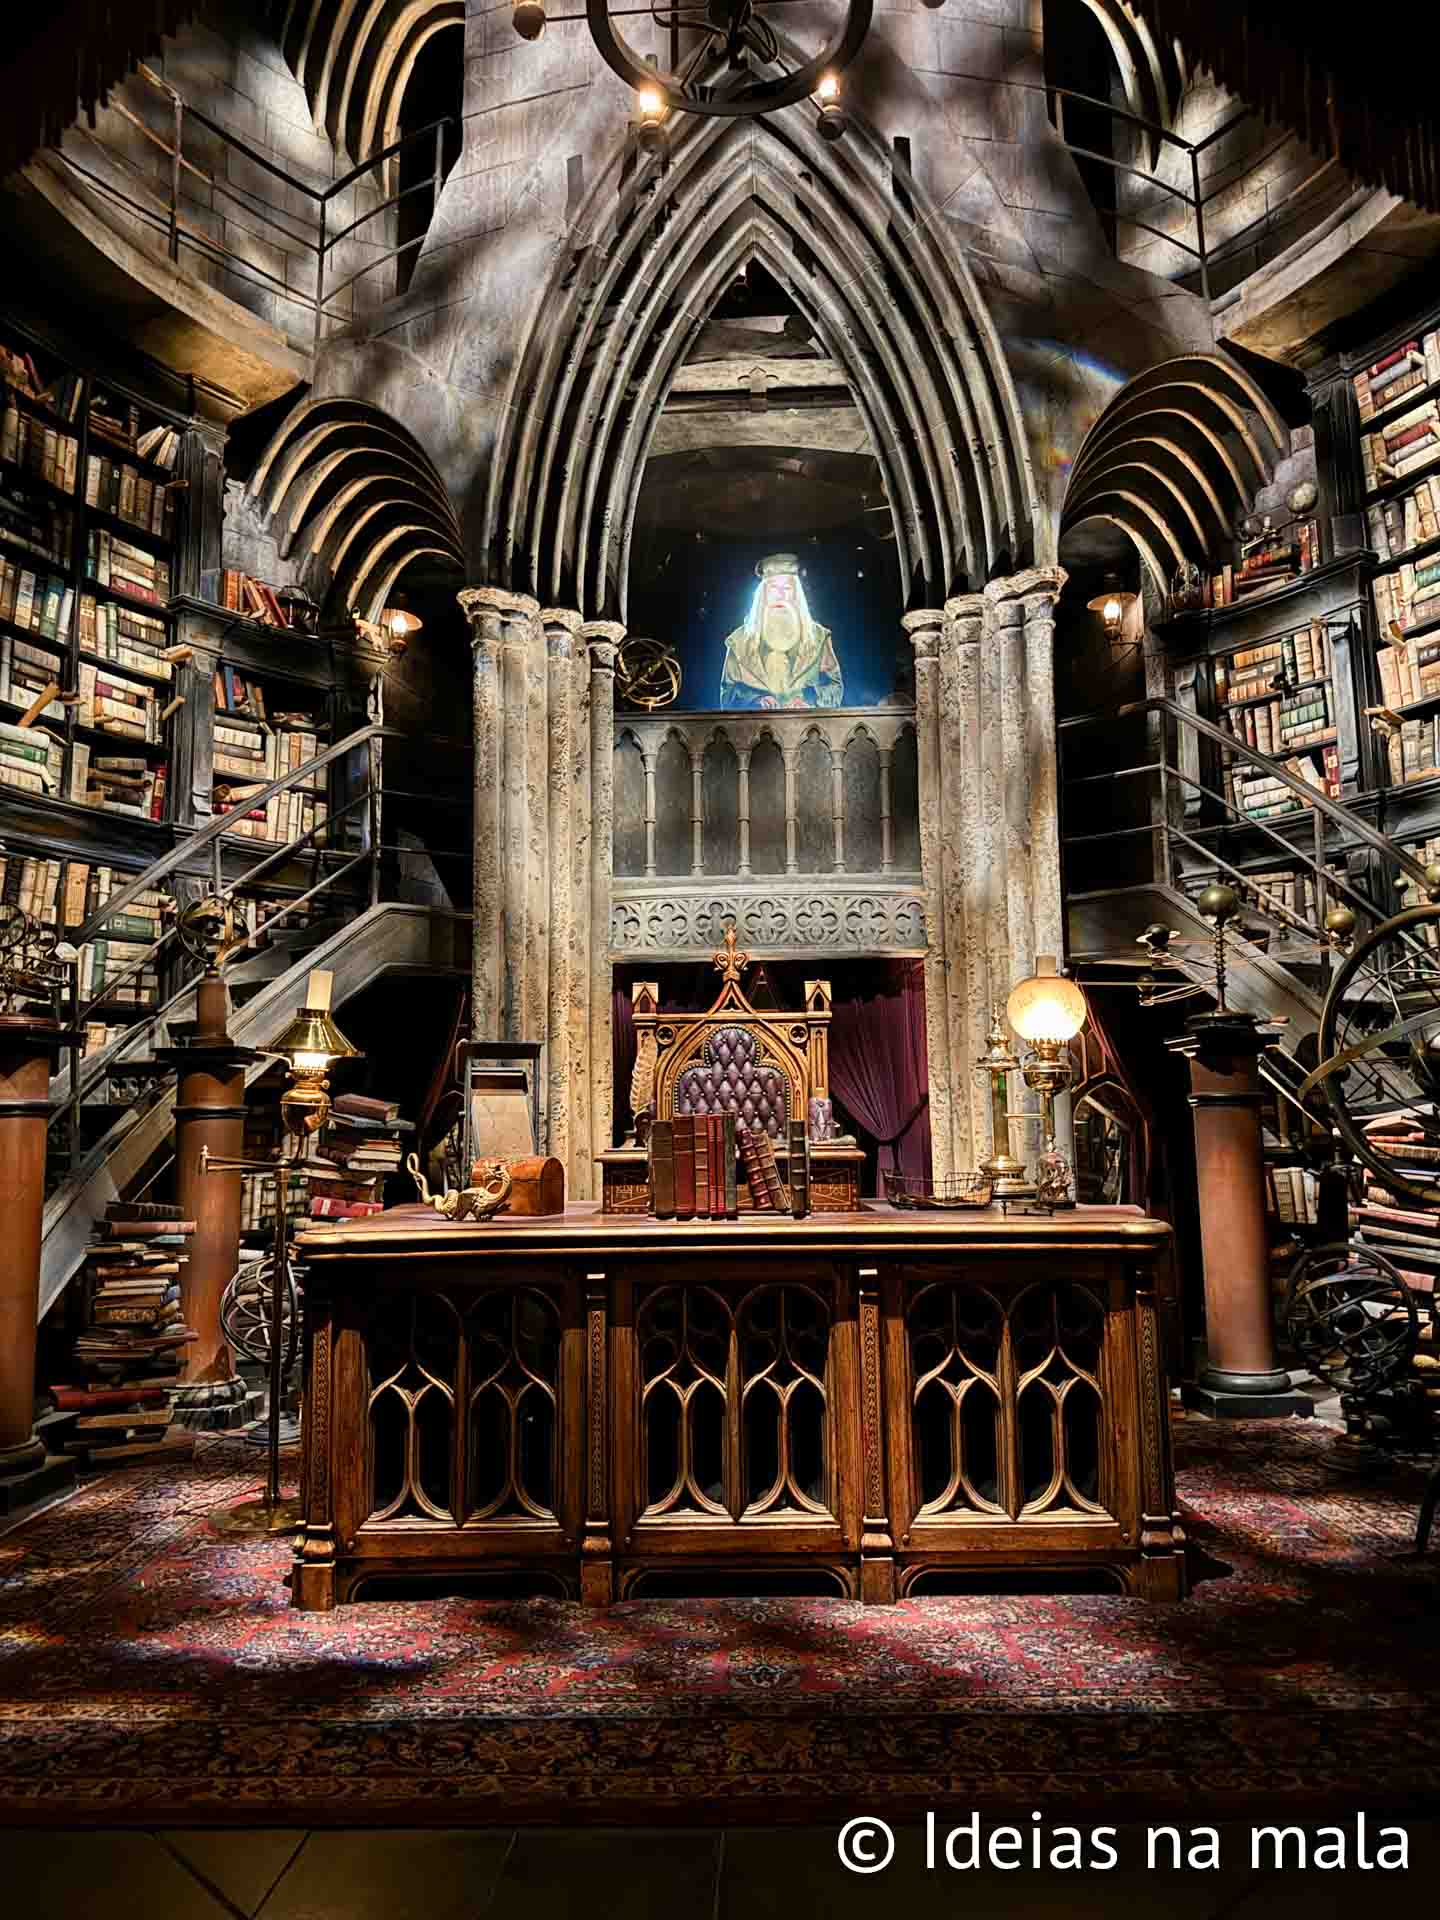 Escritório de Dumbledore, uma das atrações da fila do Harry Potter